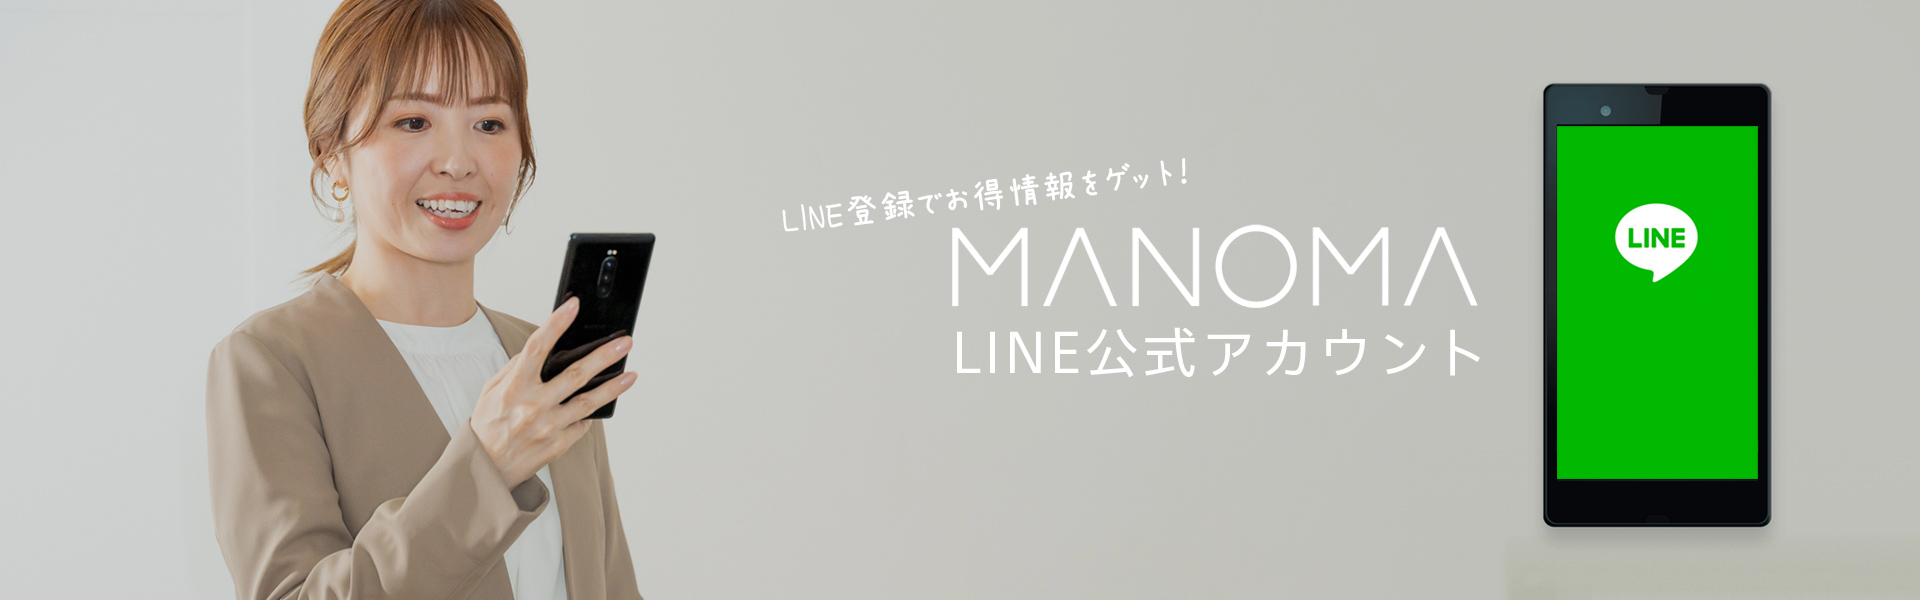 MANOMA LINE公式アカウント